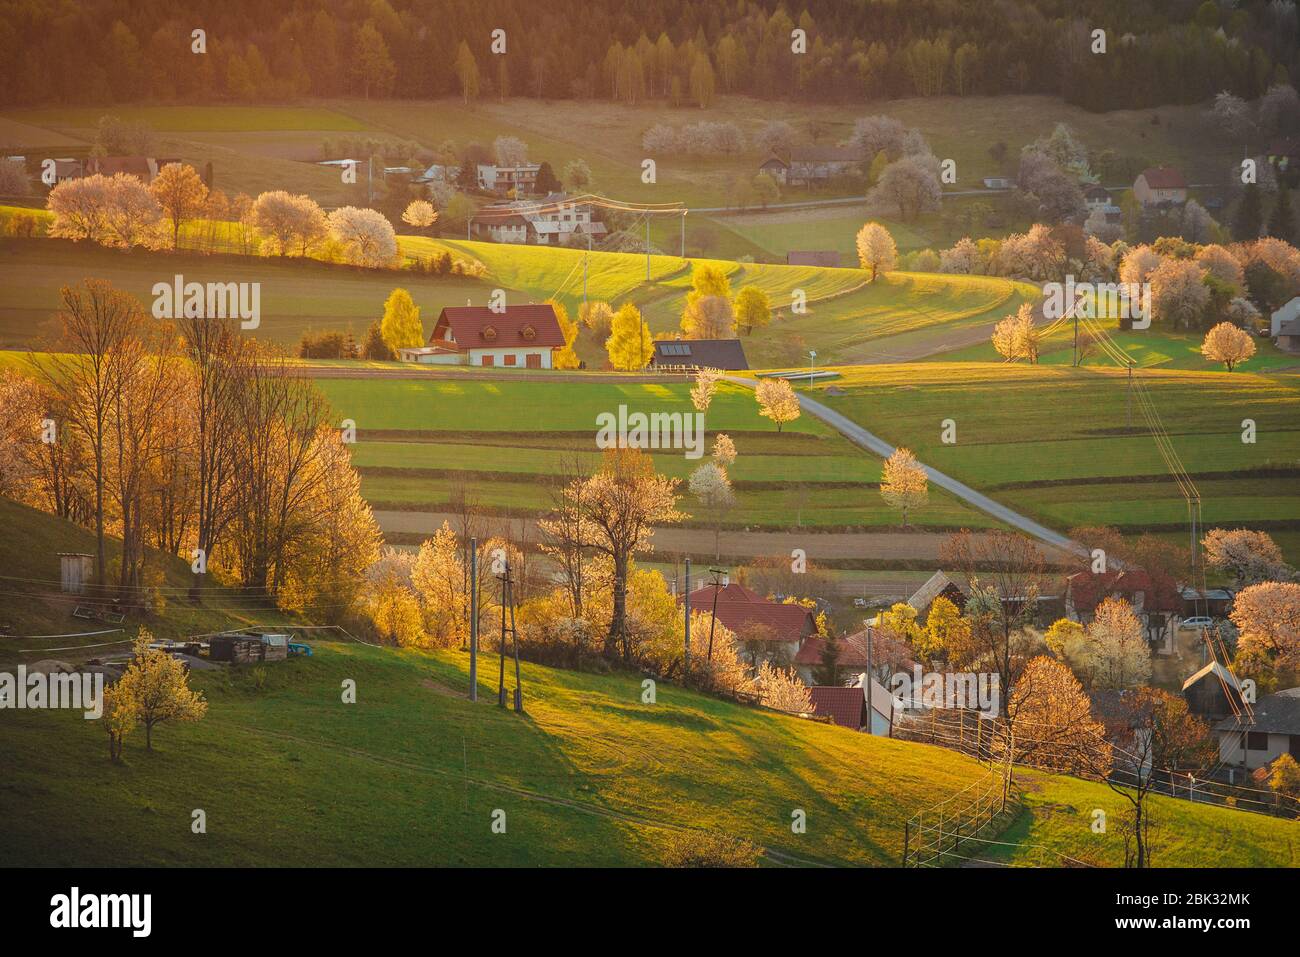 Luce del mattino nel paesaggio primaverile. Bei campi agricoli rurali verdi, piccole case, alberi in fiore, luce calda alba. Slovacchia, Europa Foto Stock